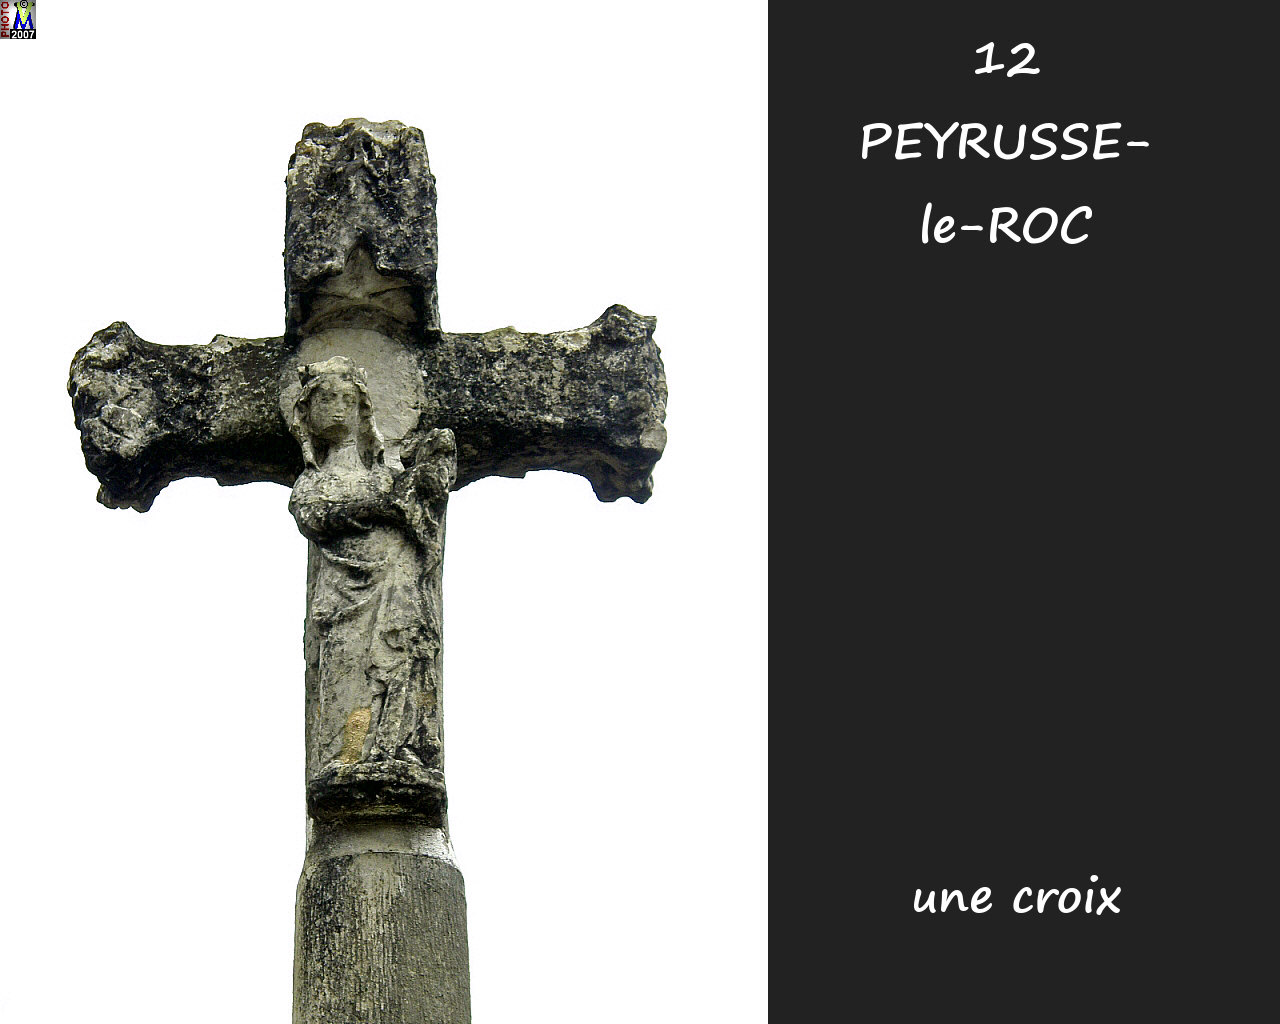 12PEYRUSSE-ROC_village-croix_100.jpg